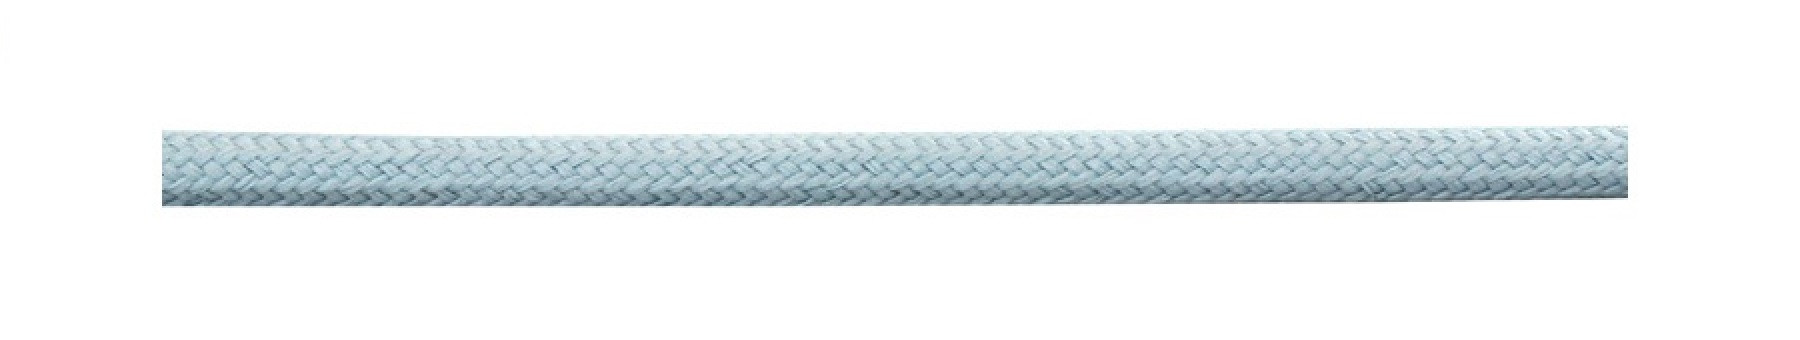 Textile Cable Pastel Blue 